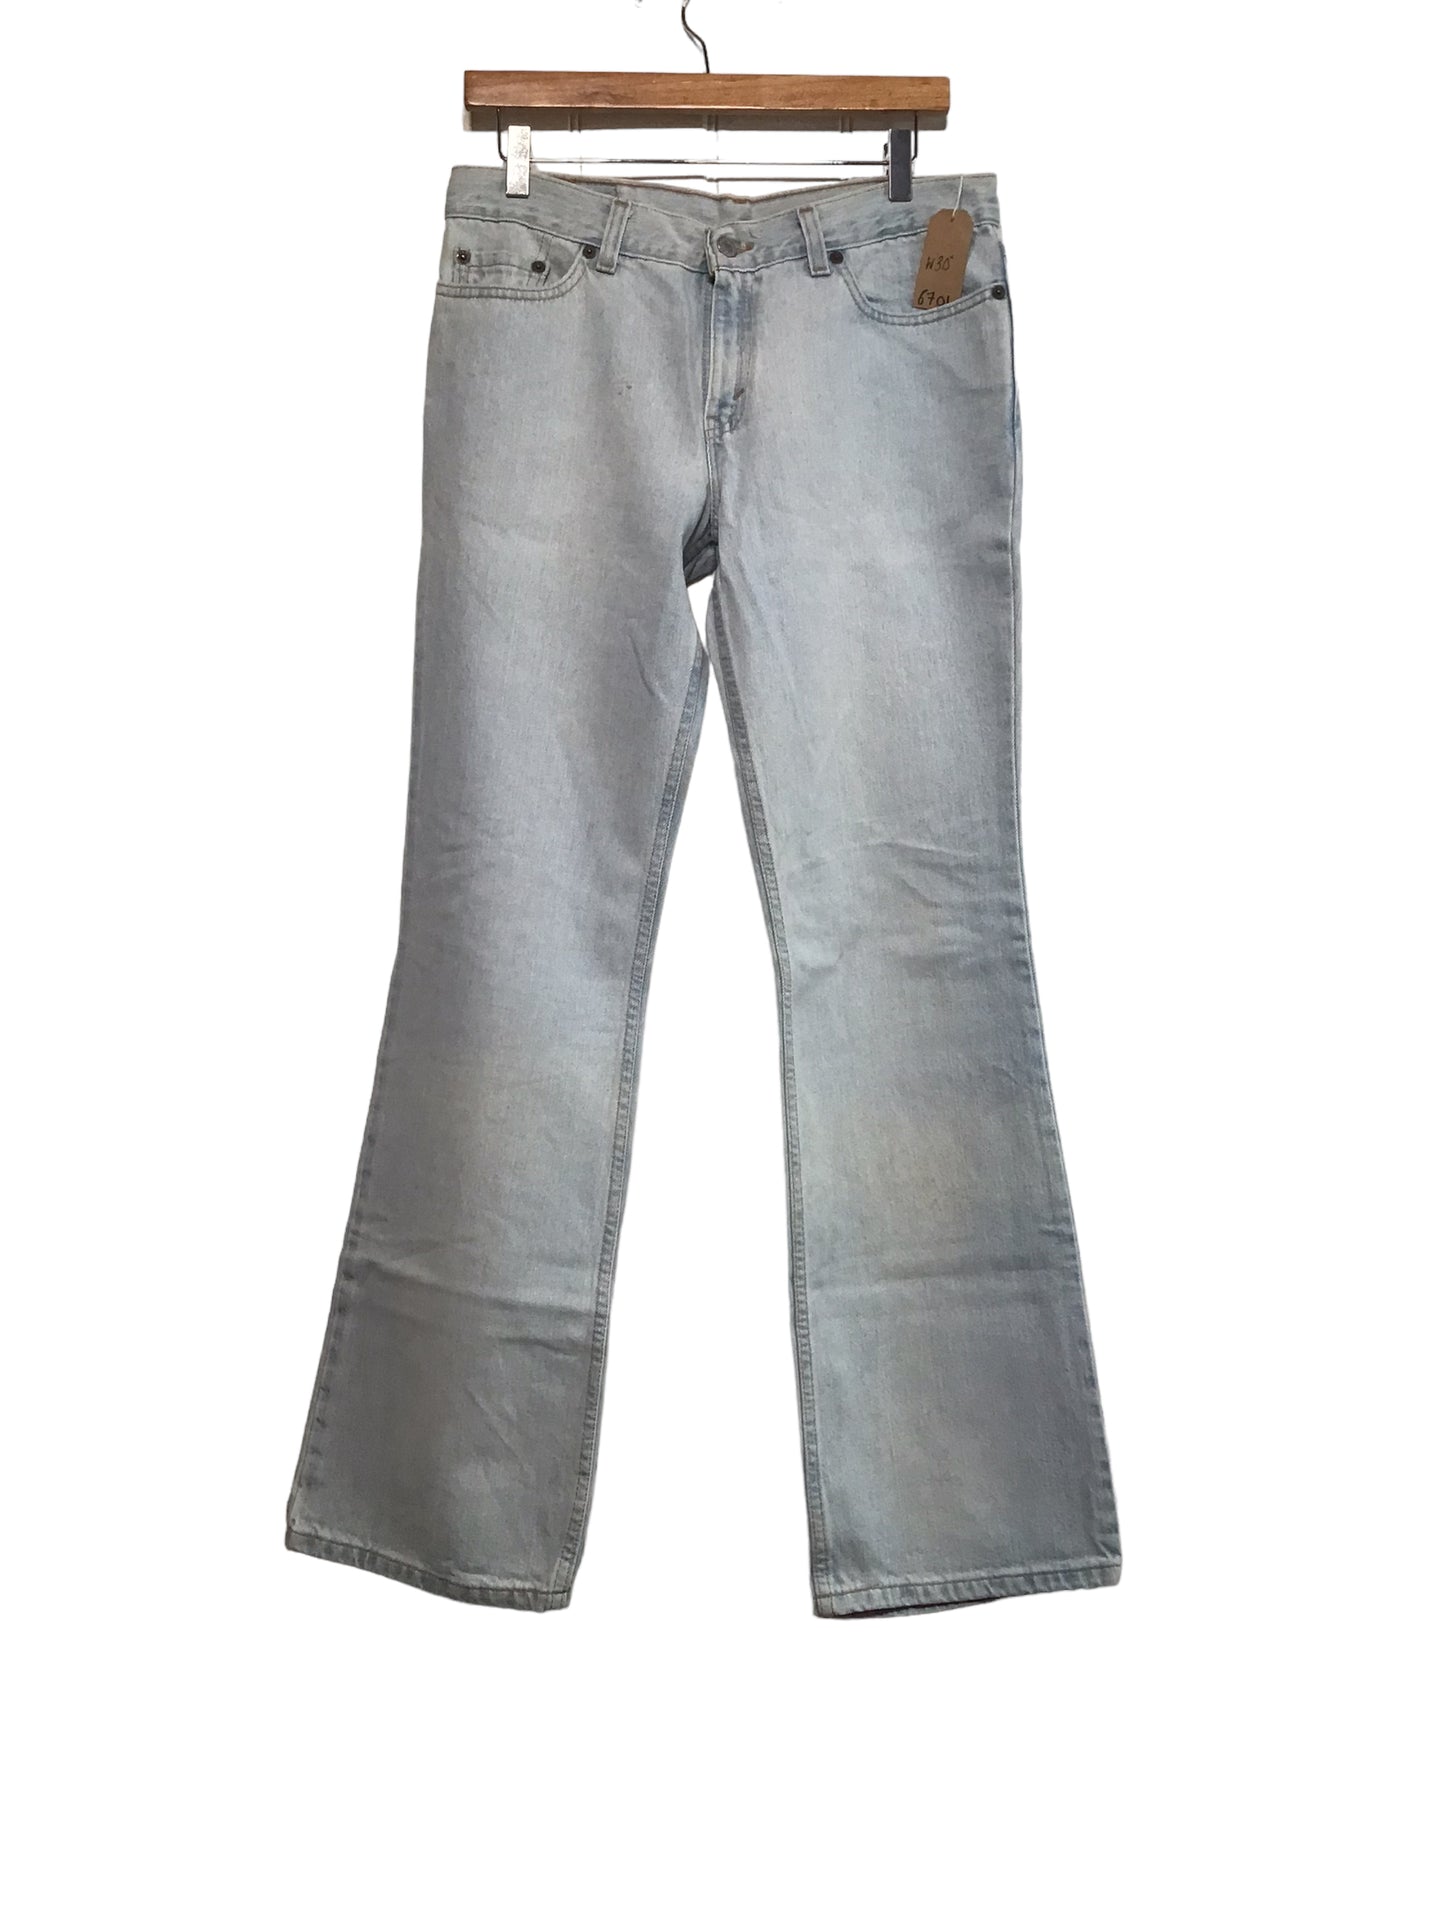 Levi 518 Jeans (30x32)